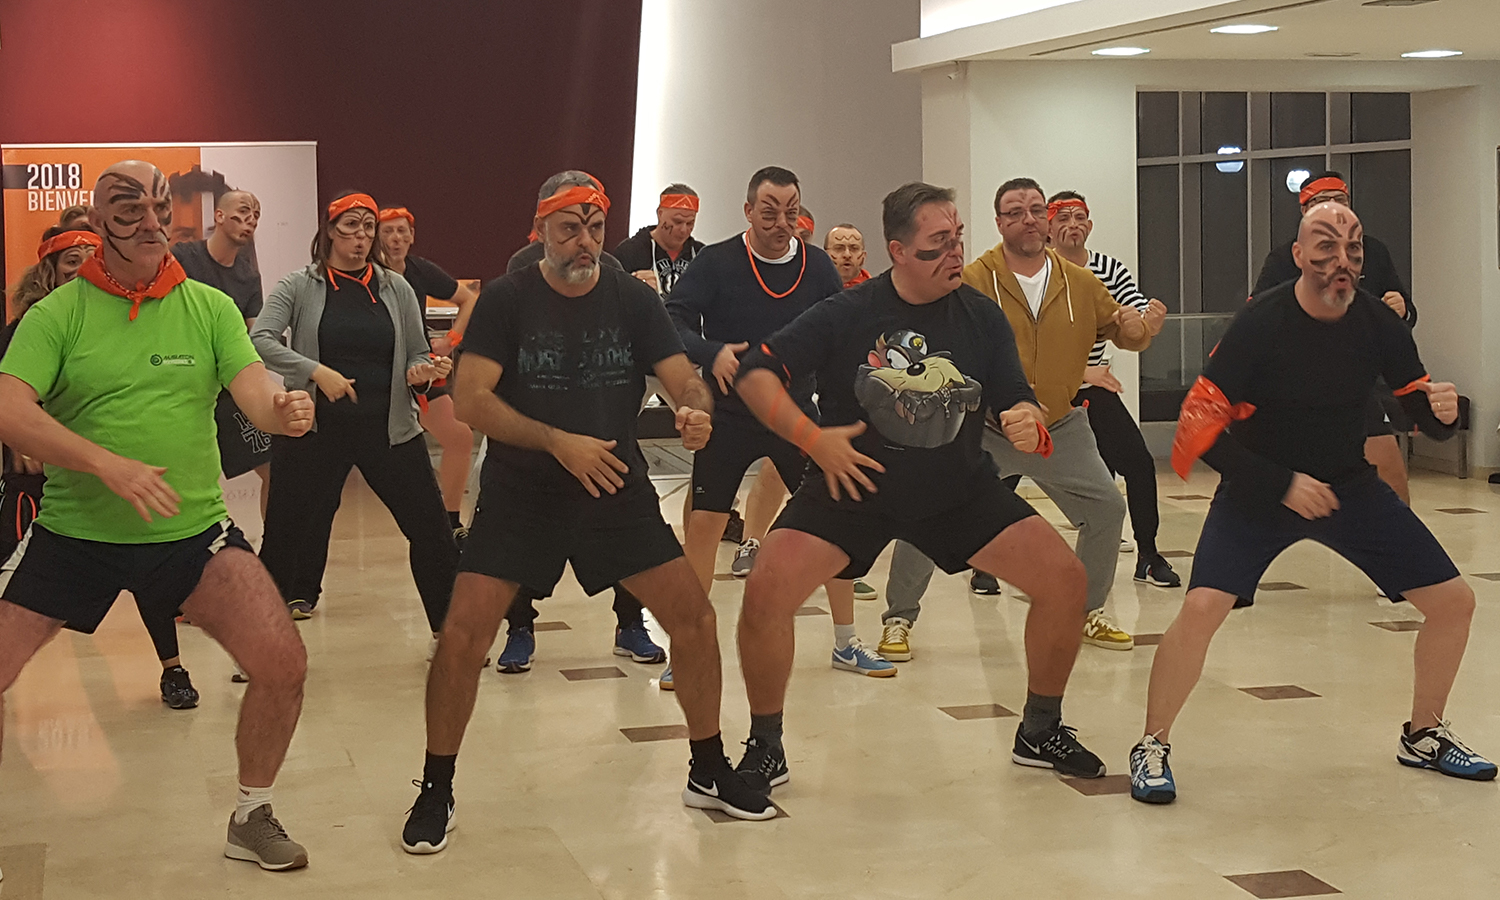 El equipo naranja durante la realización de su versión de la Danza Haka Maorí durante la Convención 2018 de Conversia